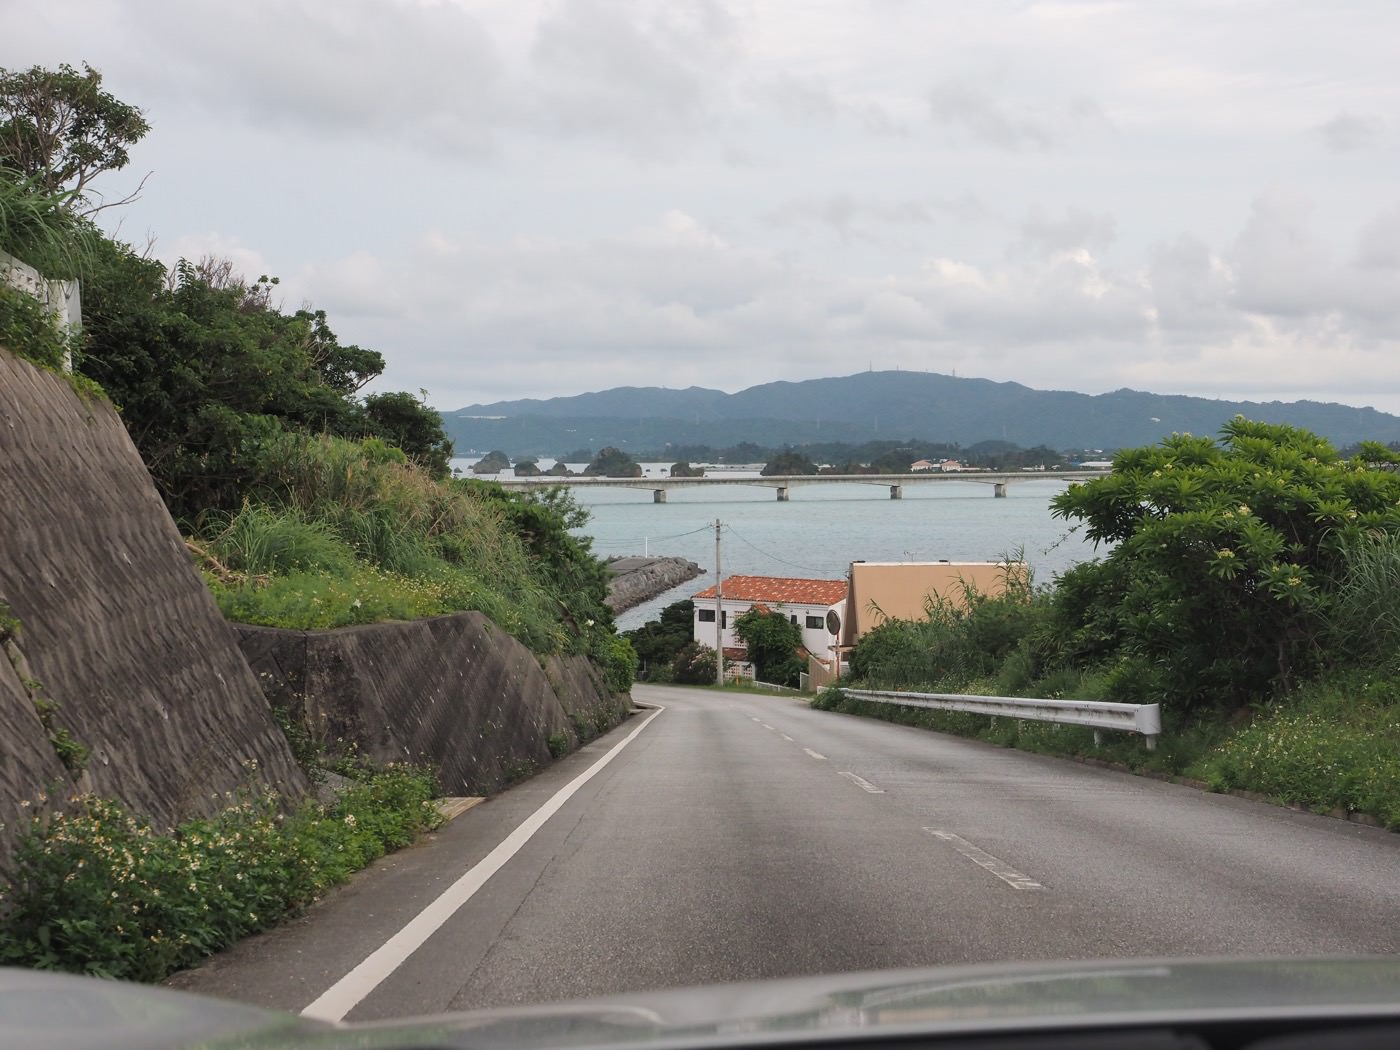 沖繩景點 租Mazda Miata小跑車與古宇利大橋 - 一口冒險 Bitesized Adventure